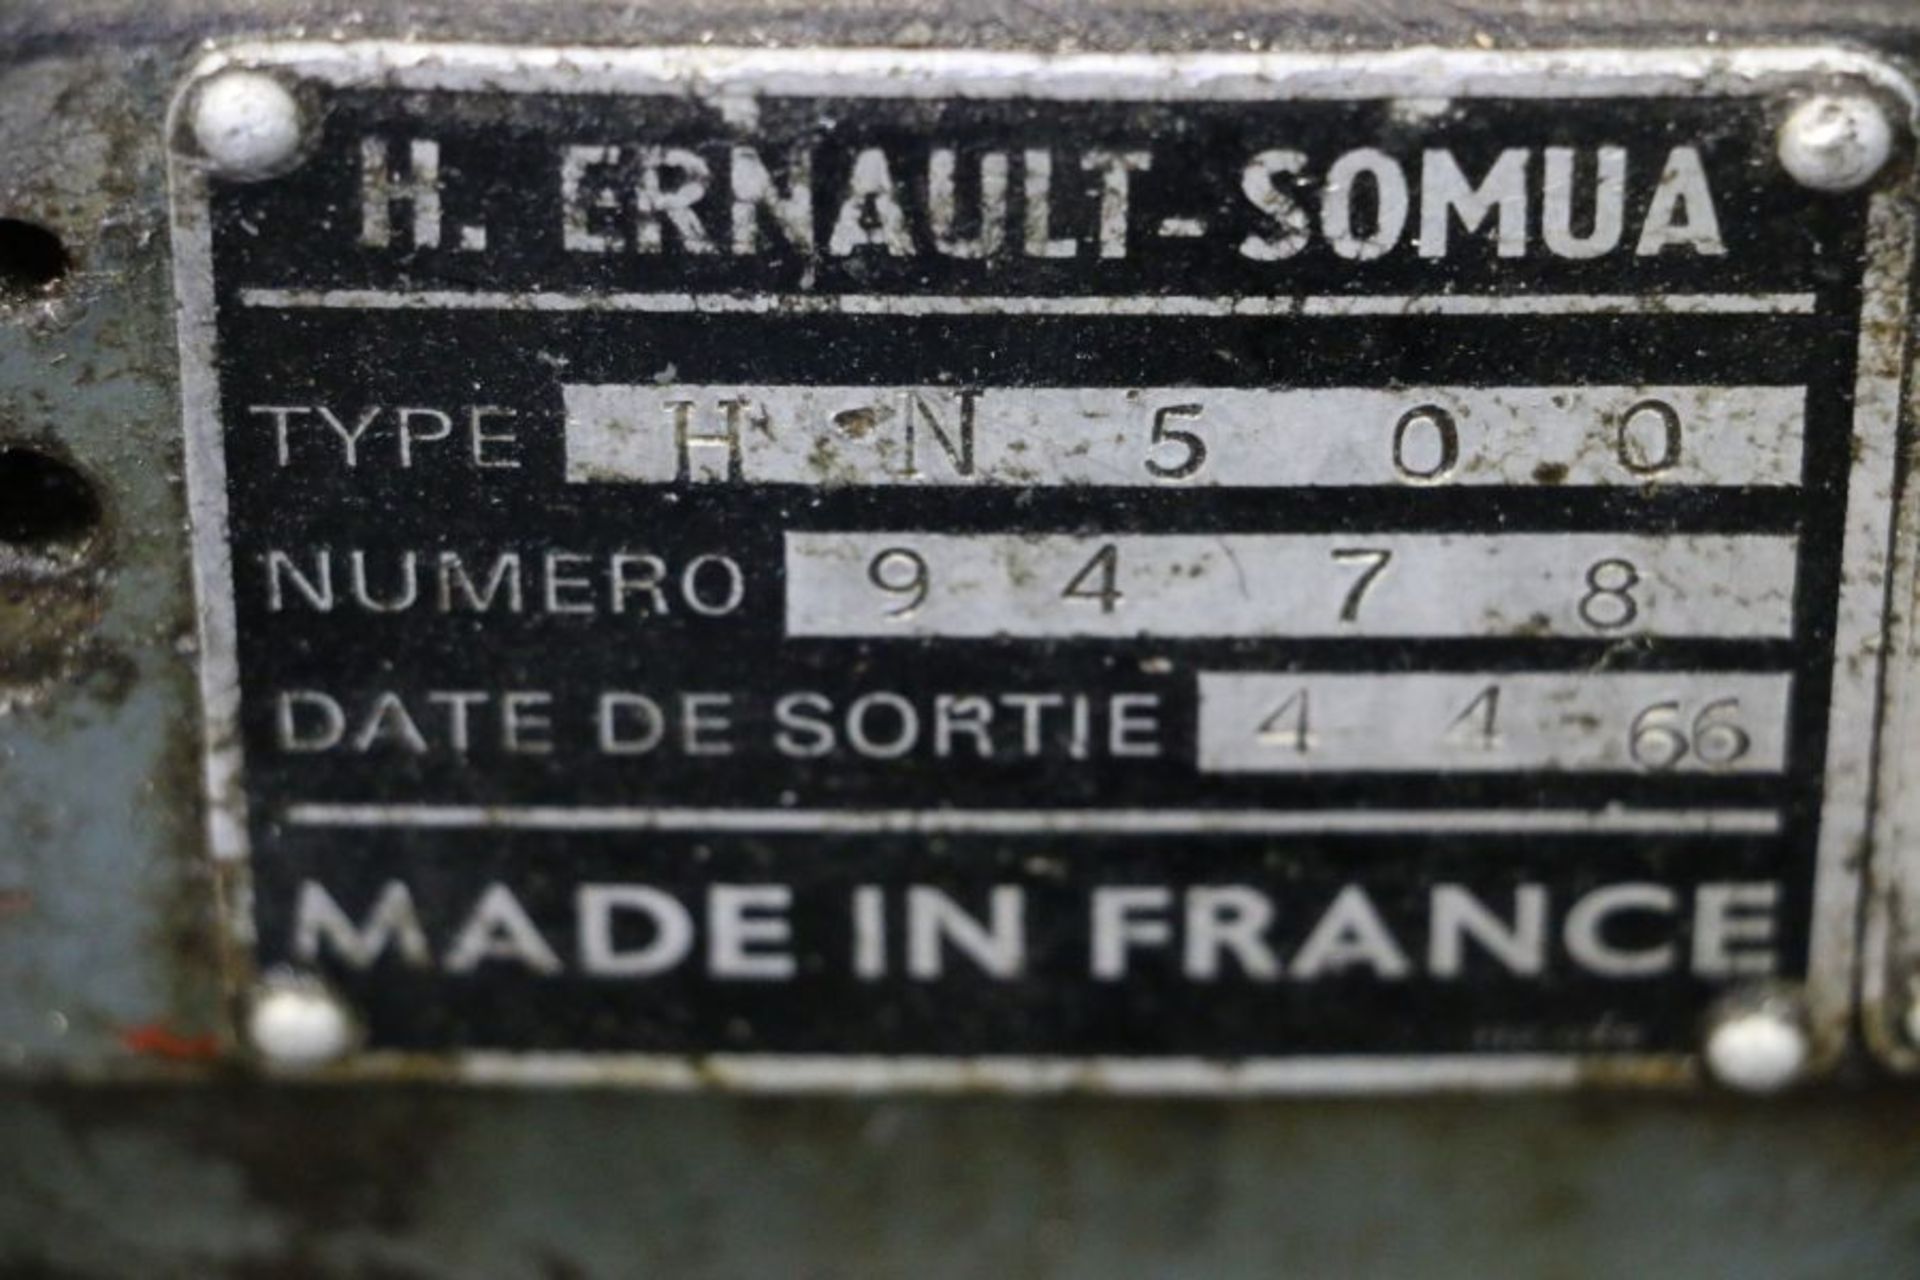 H. Ernault-Somua HN500 Lathe, s/n 9478 - Image 8 of 8